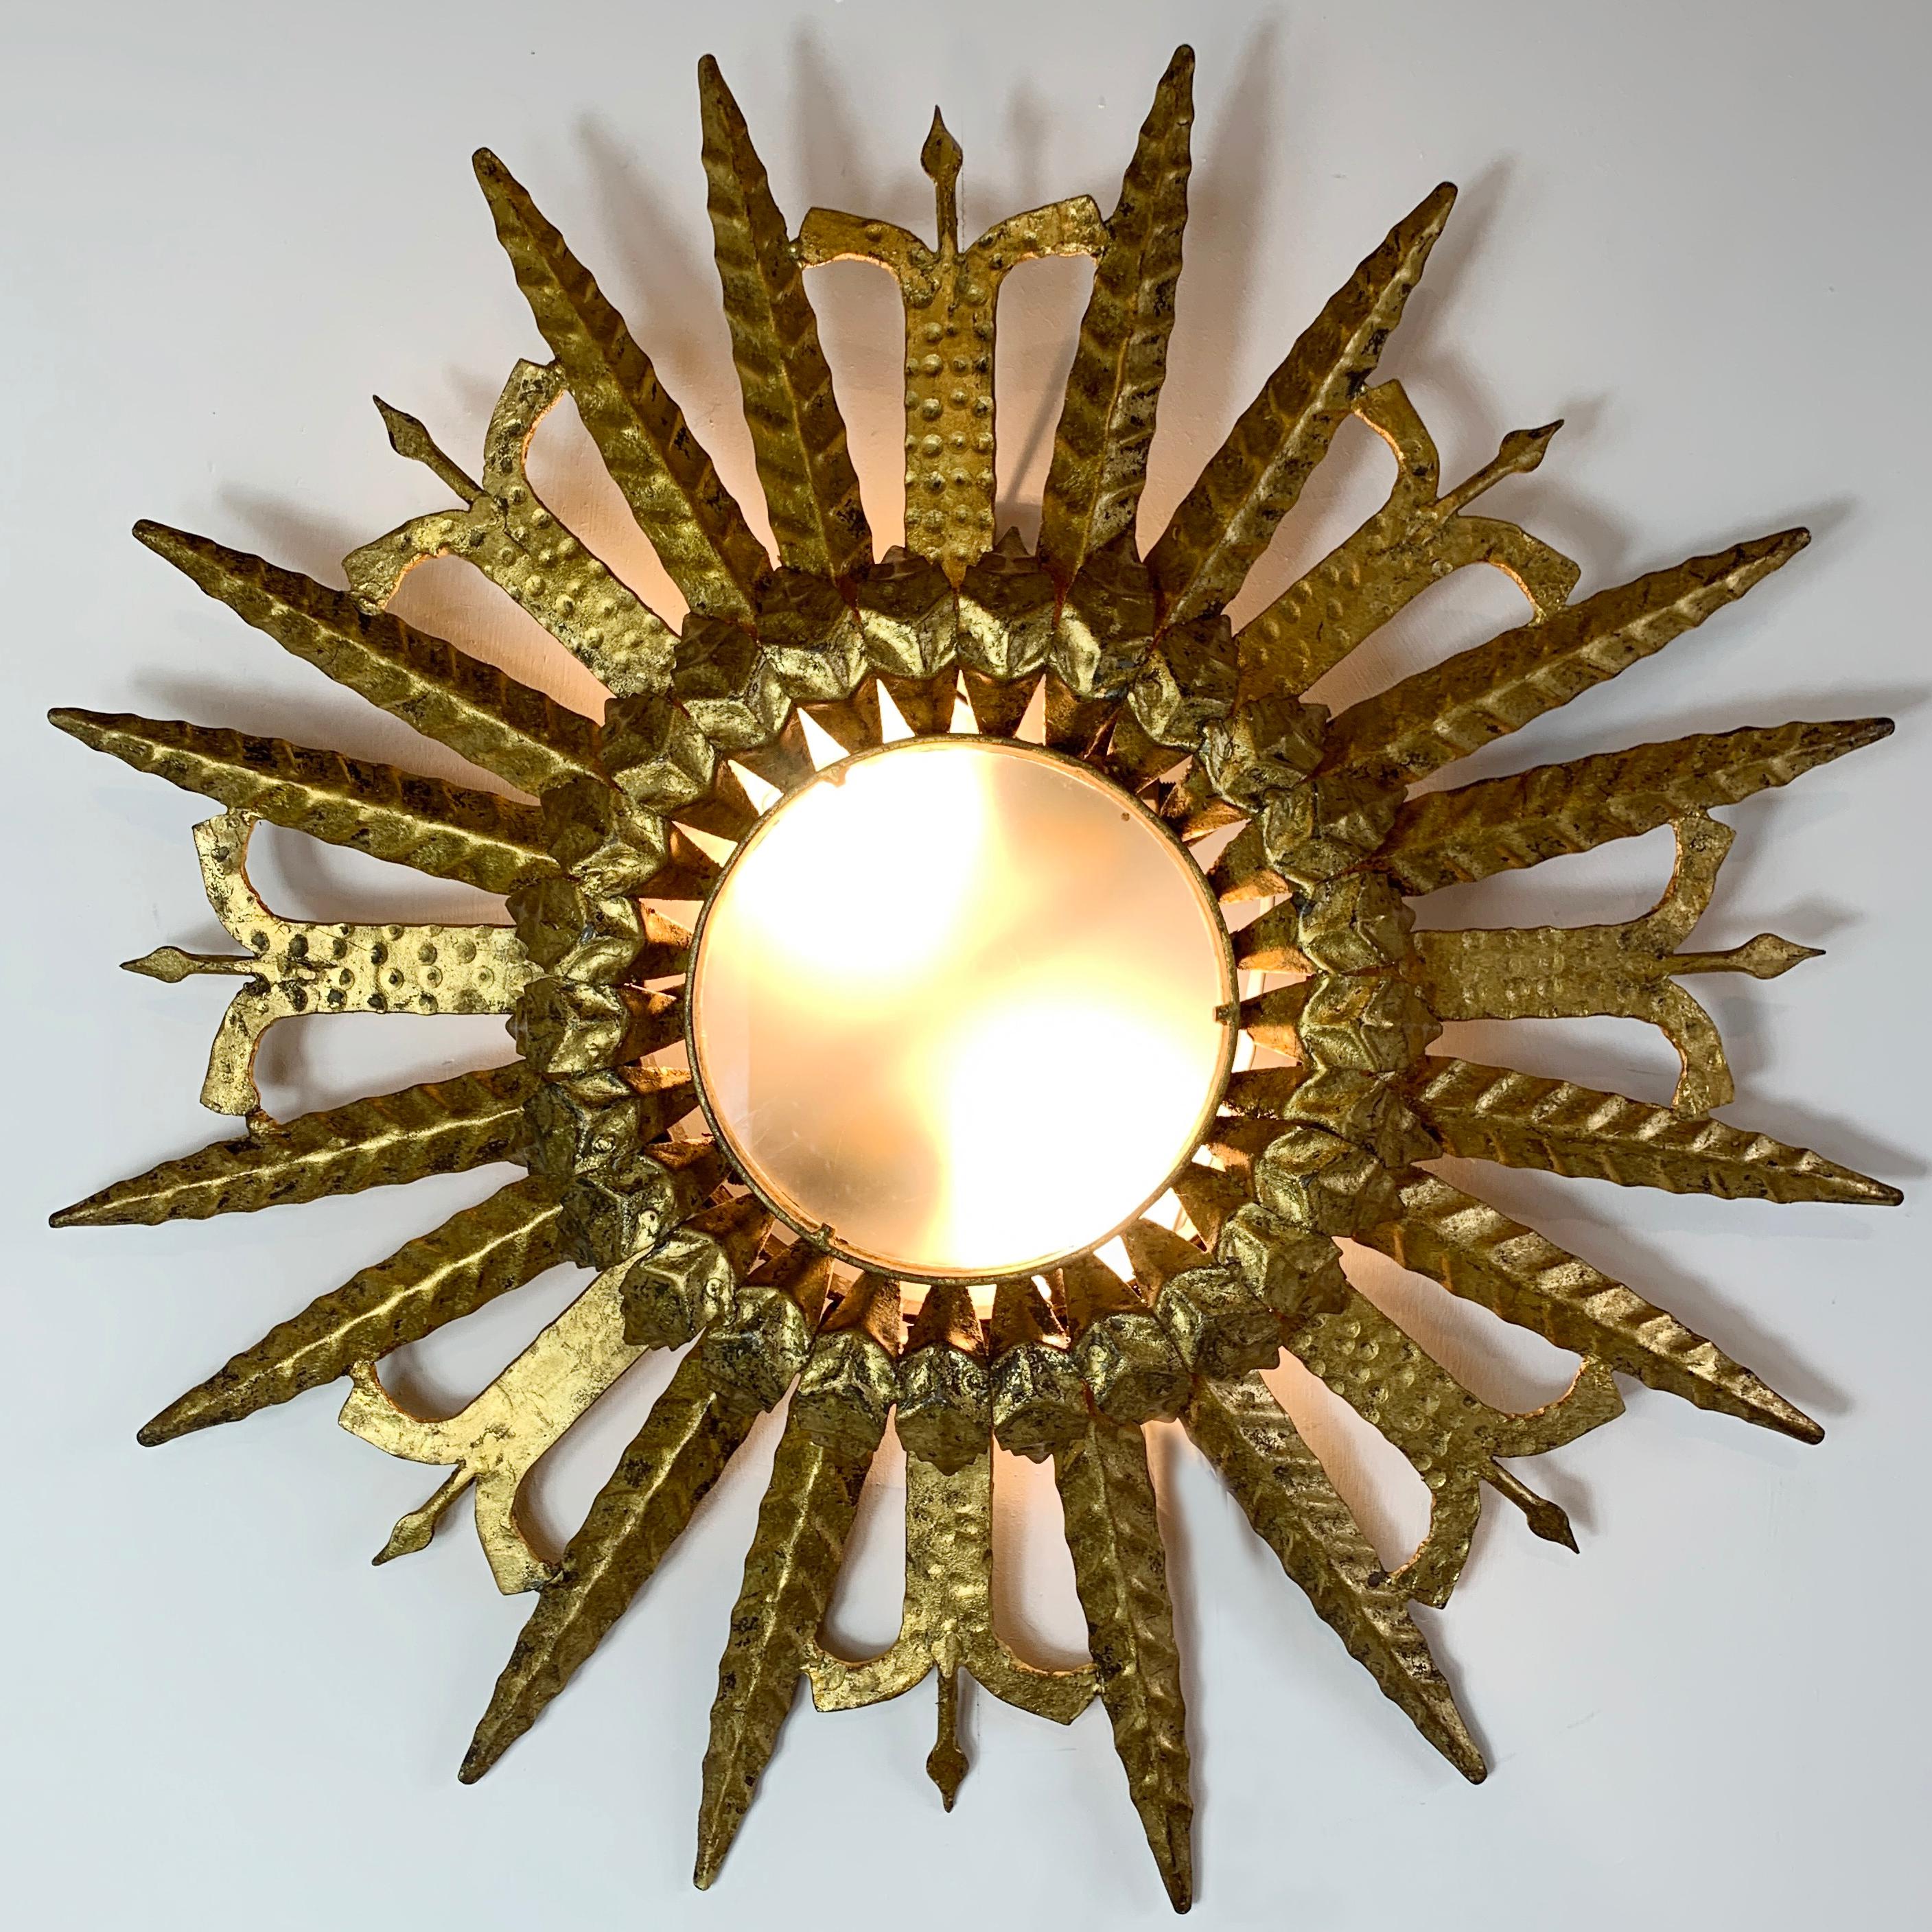 Plafonnier en fer doré espagnol des années 1950

Incroyable soleil espagnol doré sur fer, avec deux douilles placées derrière le verre opaque. 

Il s'agit d'un exemple vraiment merveilleux et exceptionnellement bien fait d'une lampe à